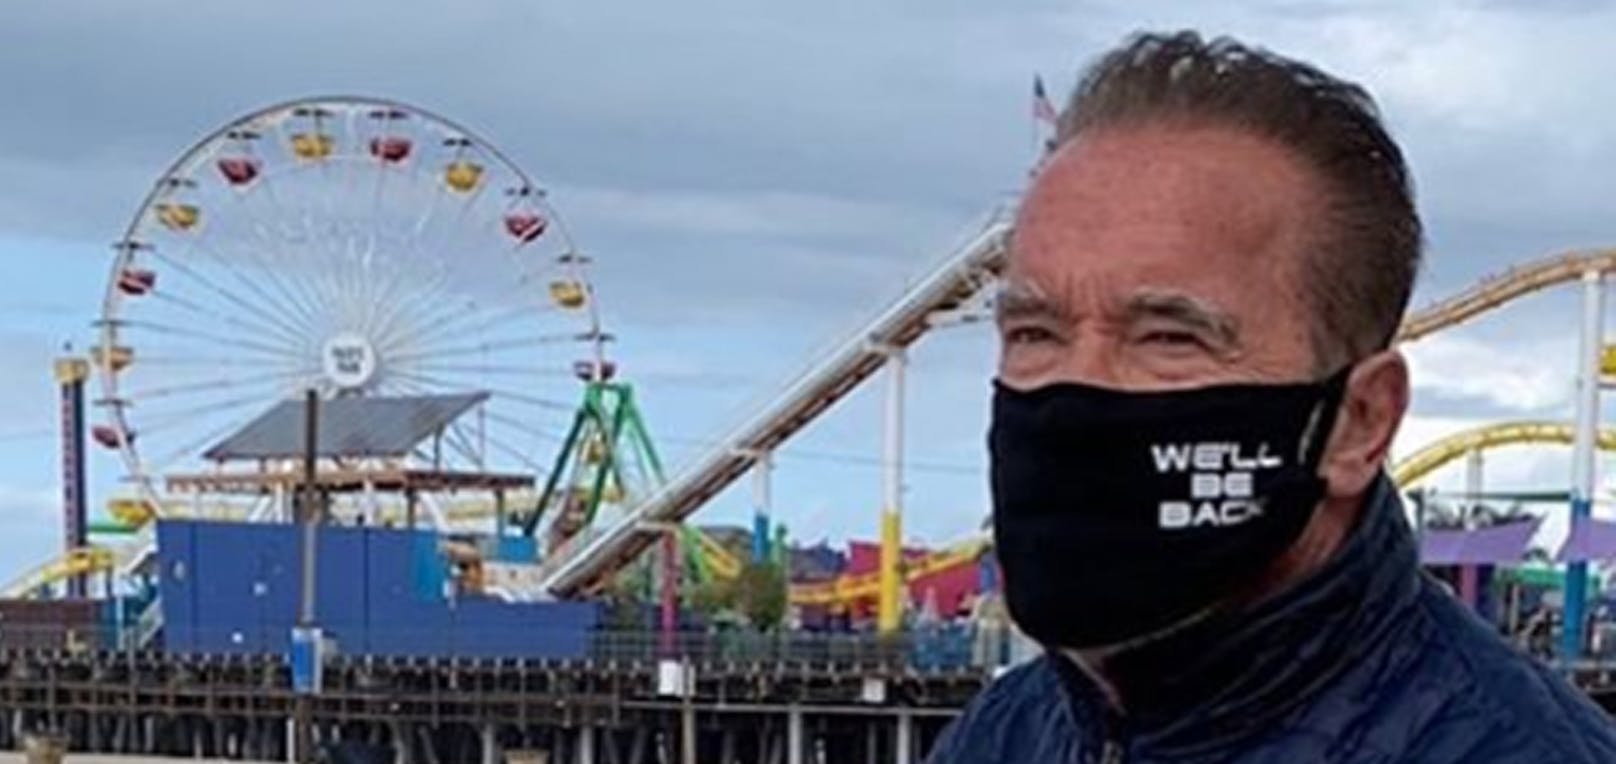 Für Arnold-Schwarzenegger-Fans ein Must-Have: Die Maske kostet 14 Euro.